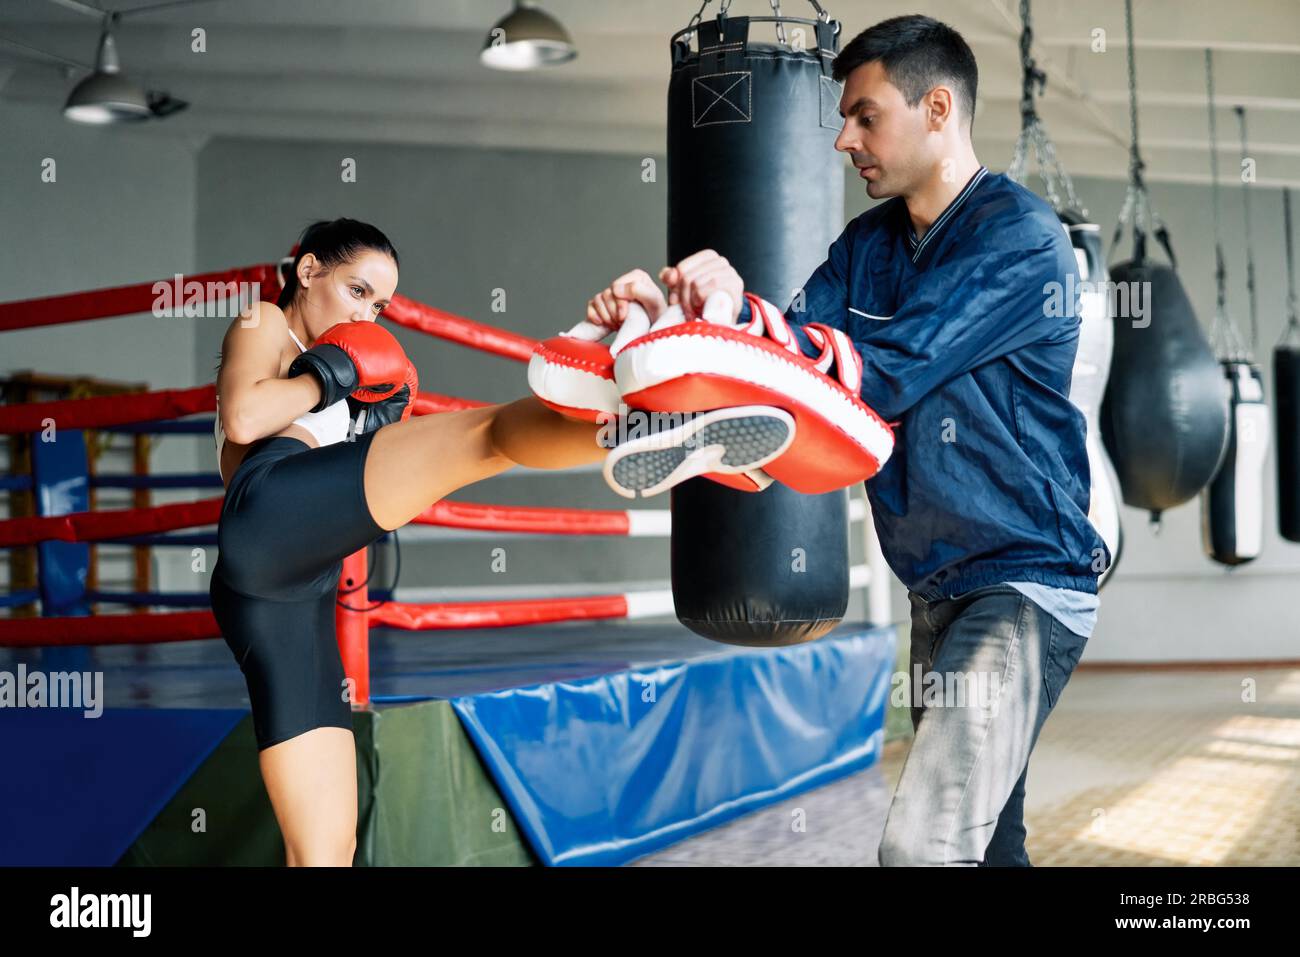 Boxerin tritt Boxhandschuhe an, die von einem persönlichen Trainer im Fitness-Fitnessstudio veranstaltet werden. Gesundes Lifestyle-Konzept Stockfoto